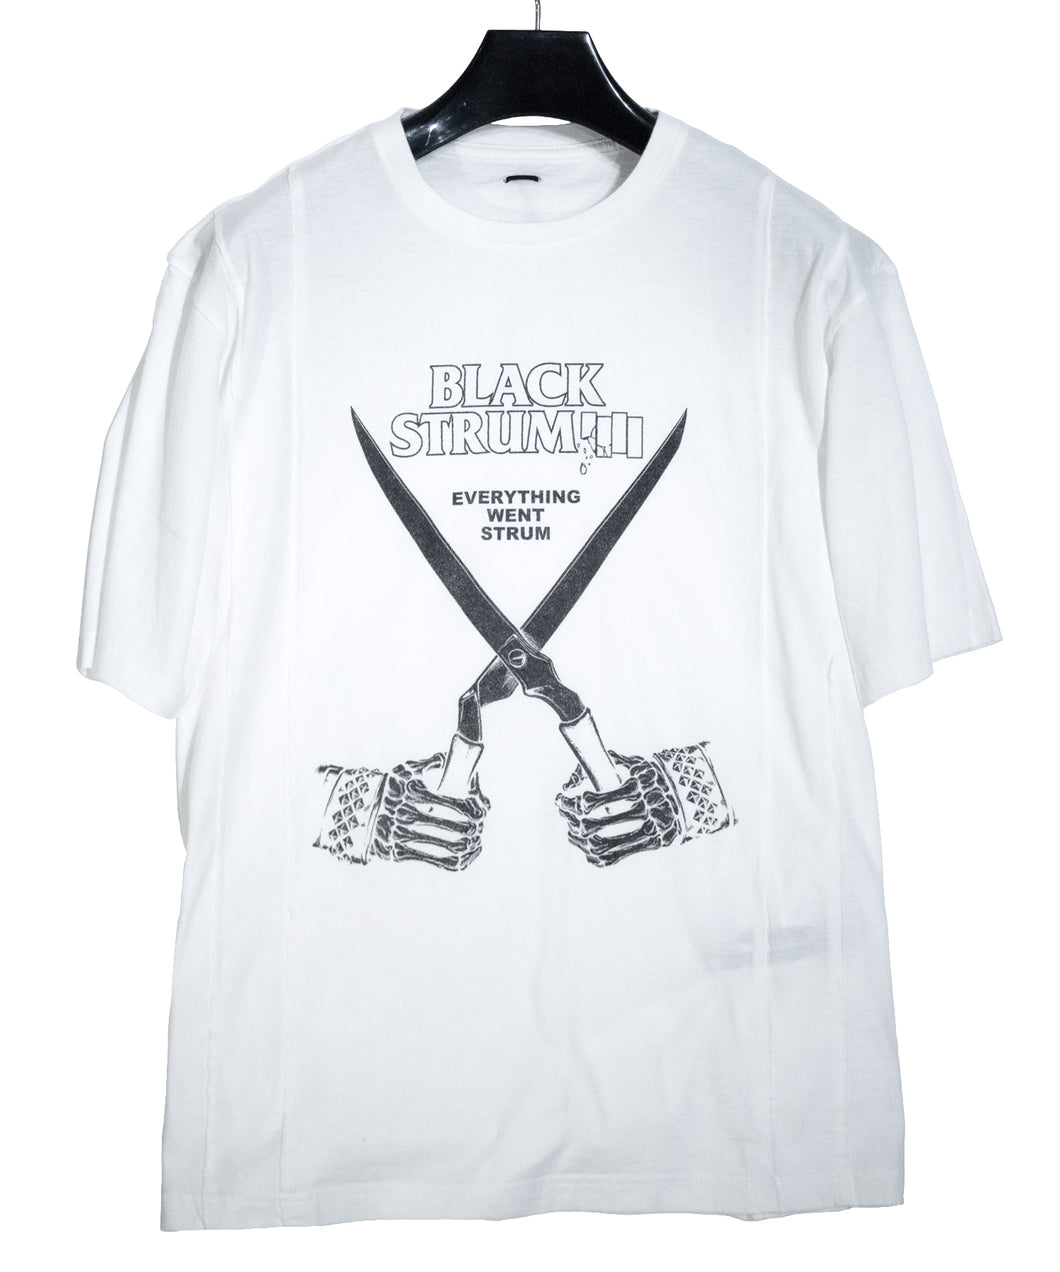 【直営店限定】30/- ナチュラルソフト天竺 BLACK STRUM ワイド Tシャツ - WHITE